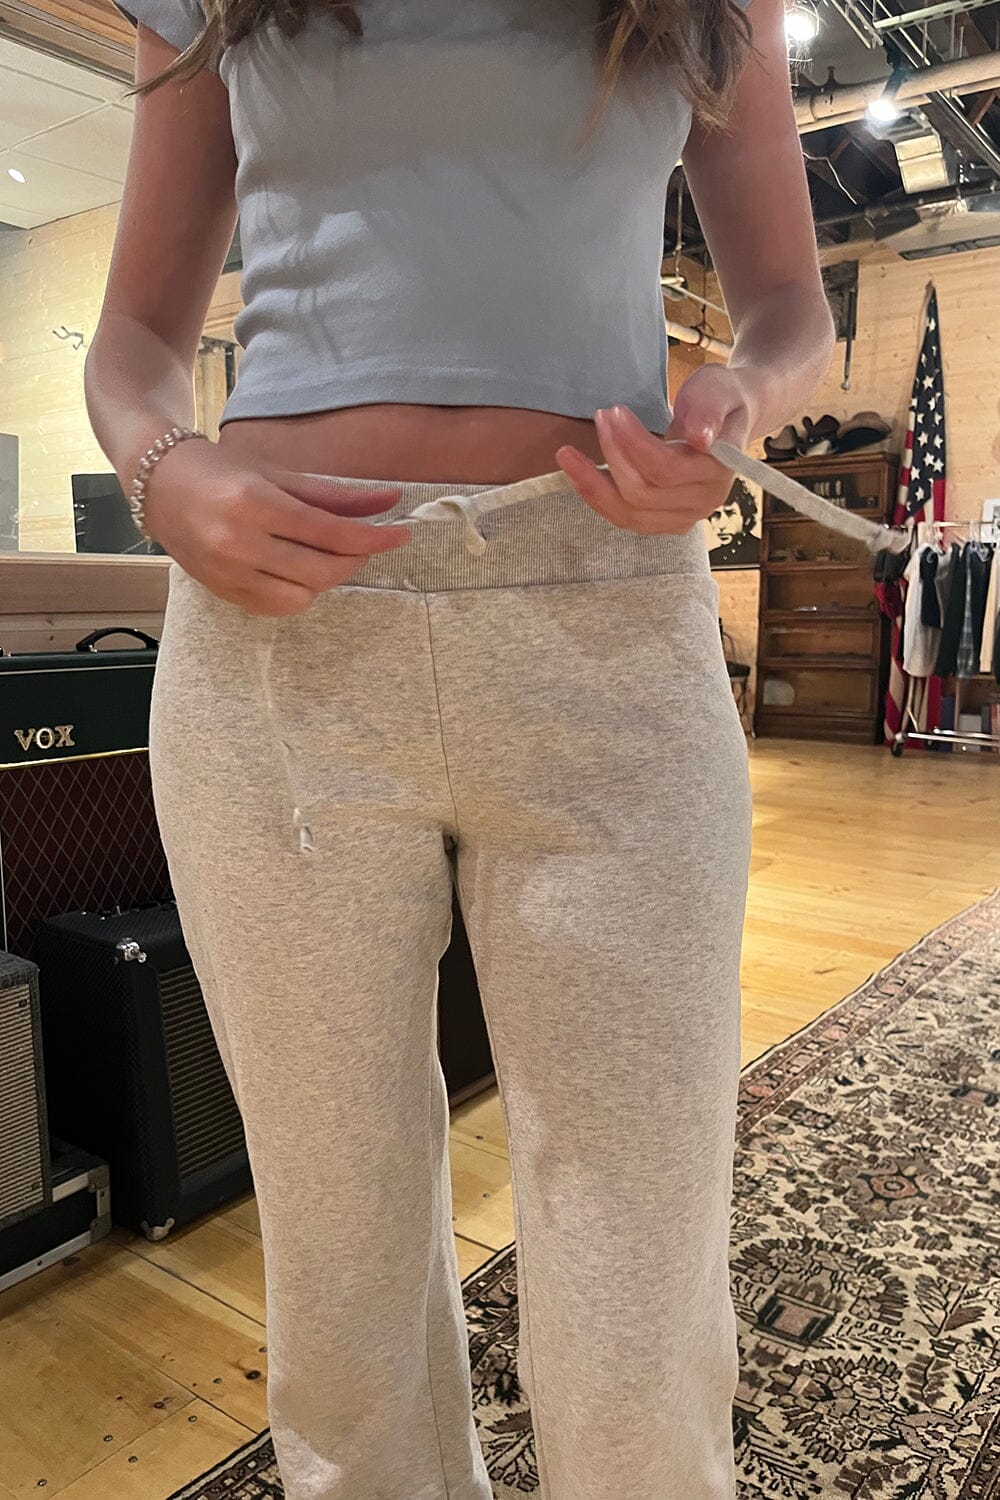 Hillary Soft Yoga Pants